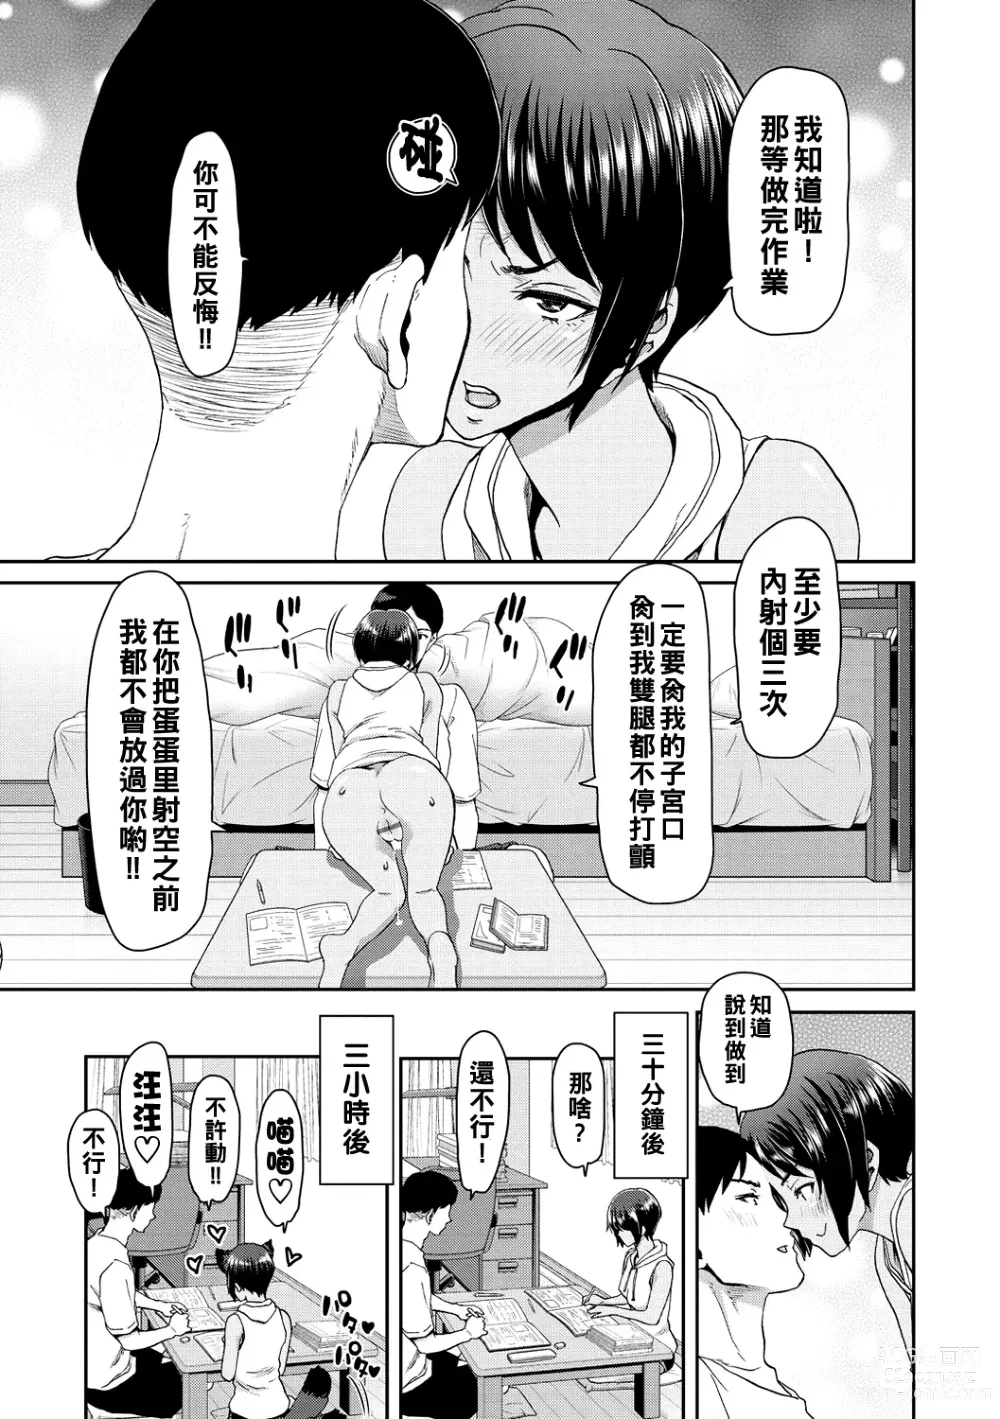 Page 137 of manga Shiyokka Hametsu SEX